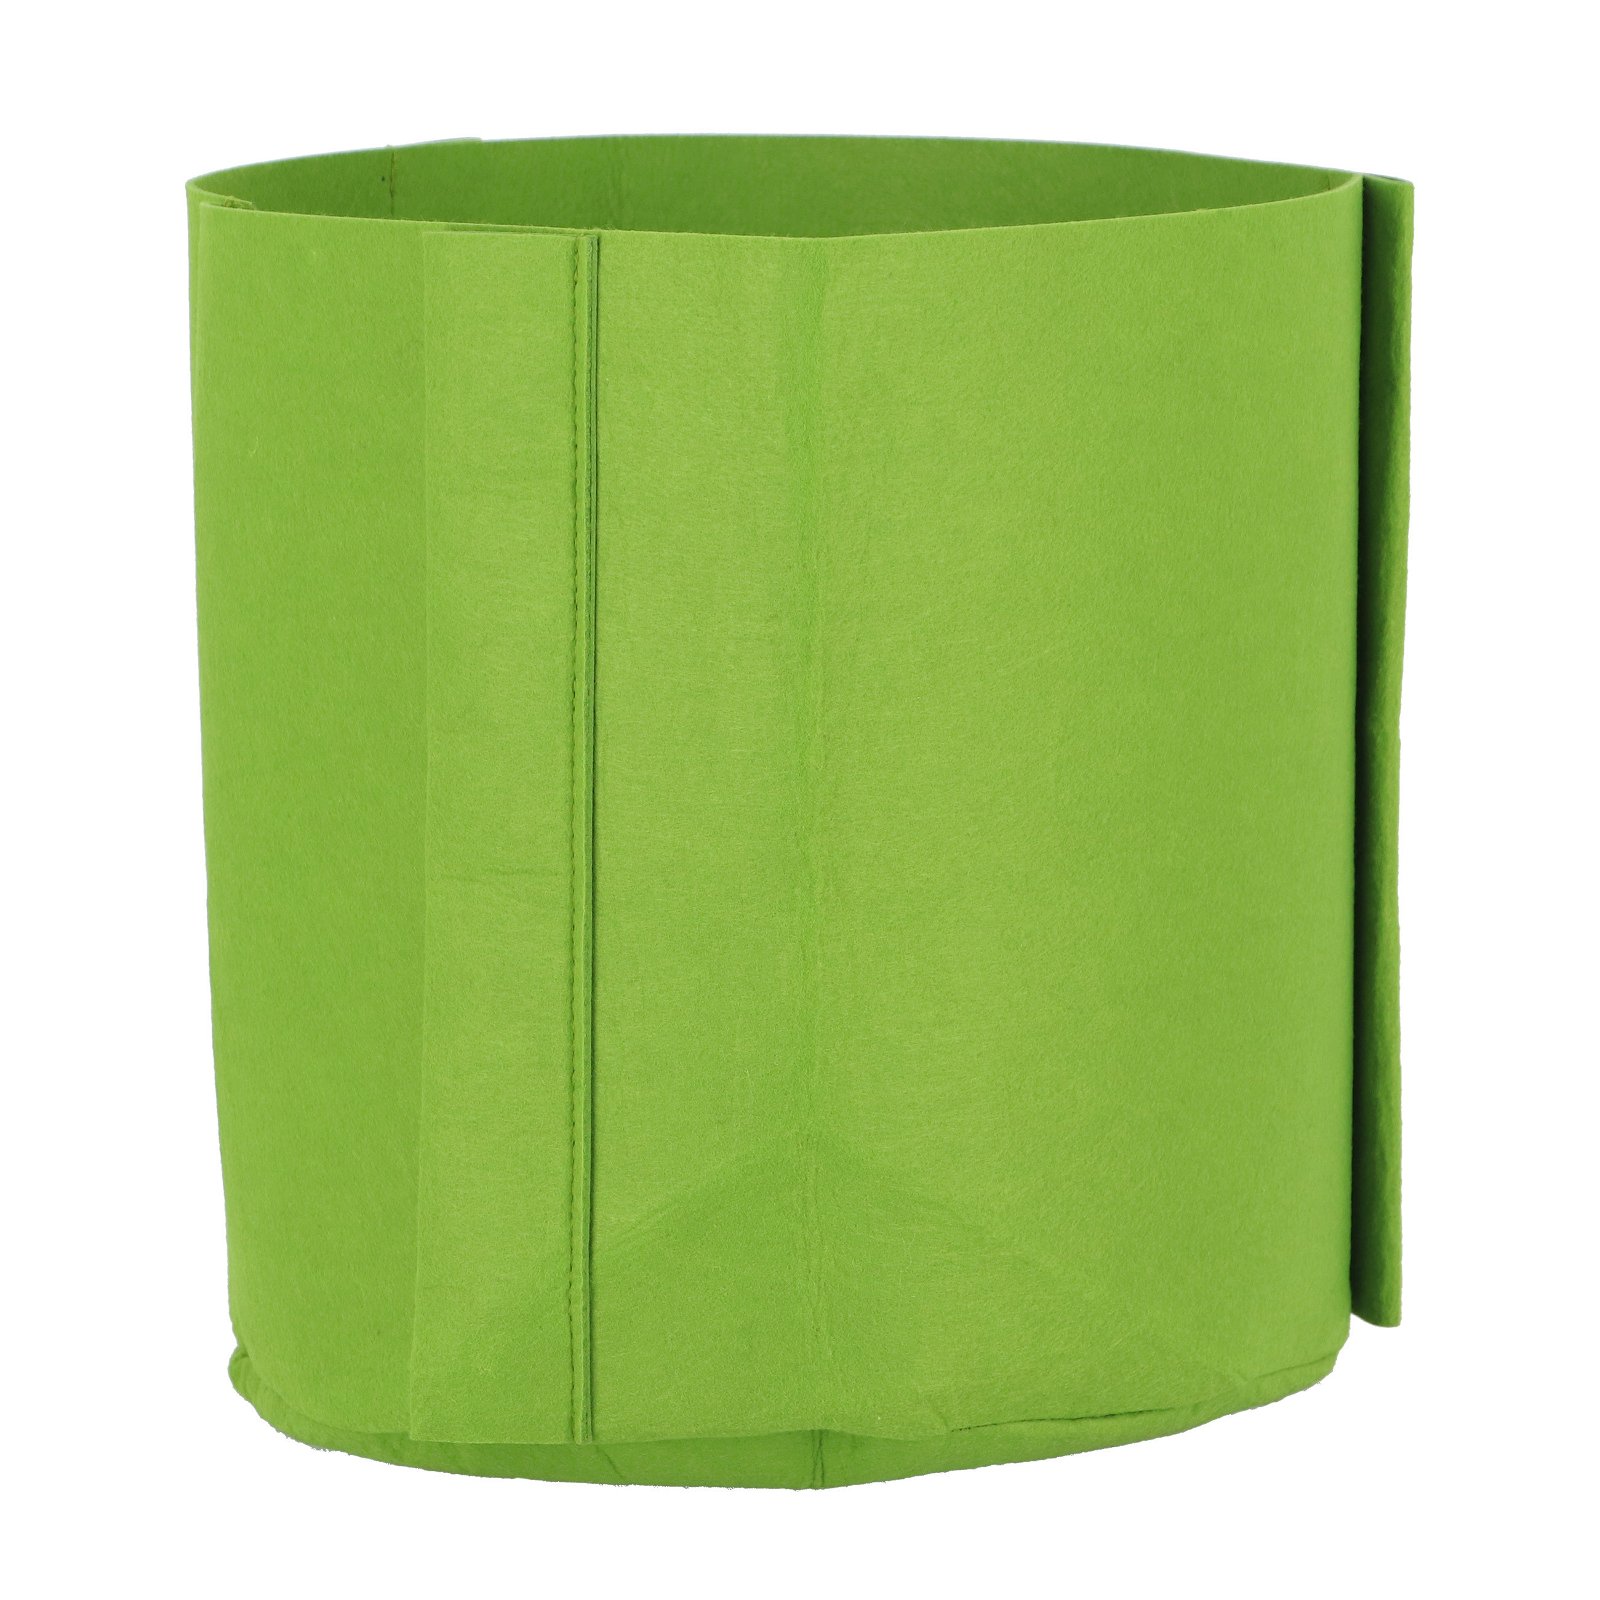 Pflanztasche XL, grün, Polyester, 35 x 35 x 35 cm, 0,230 kg